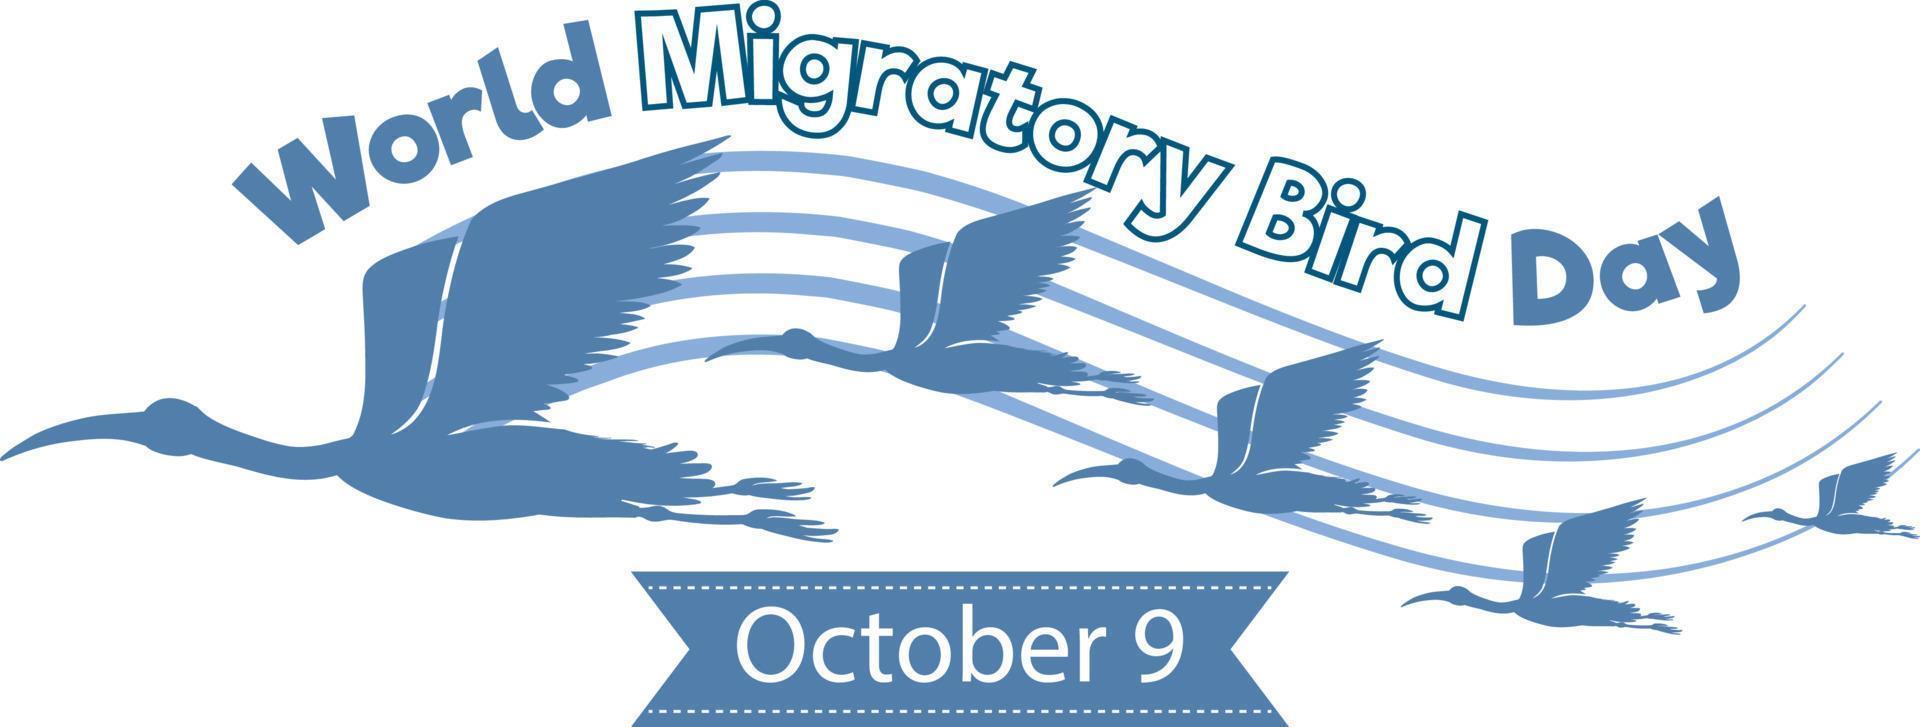 concept de bannière de la journée mondiale des oiseaux migrateurs vecteur